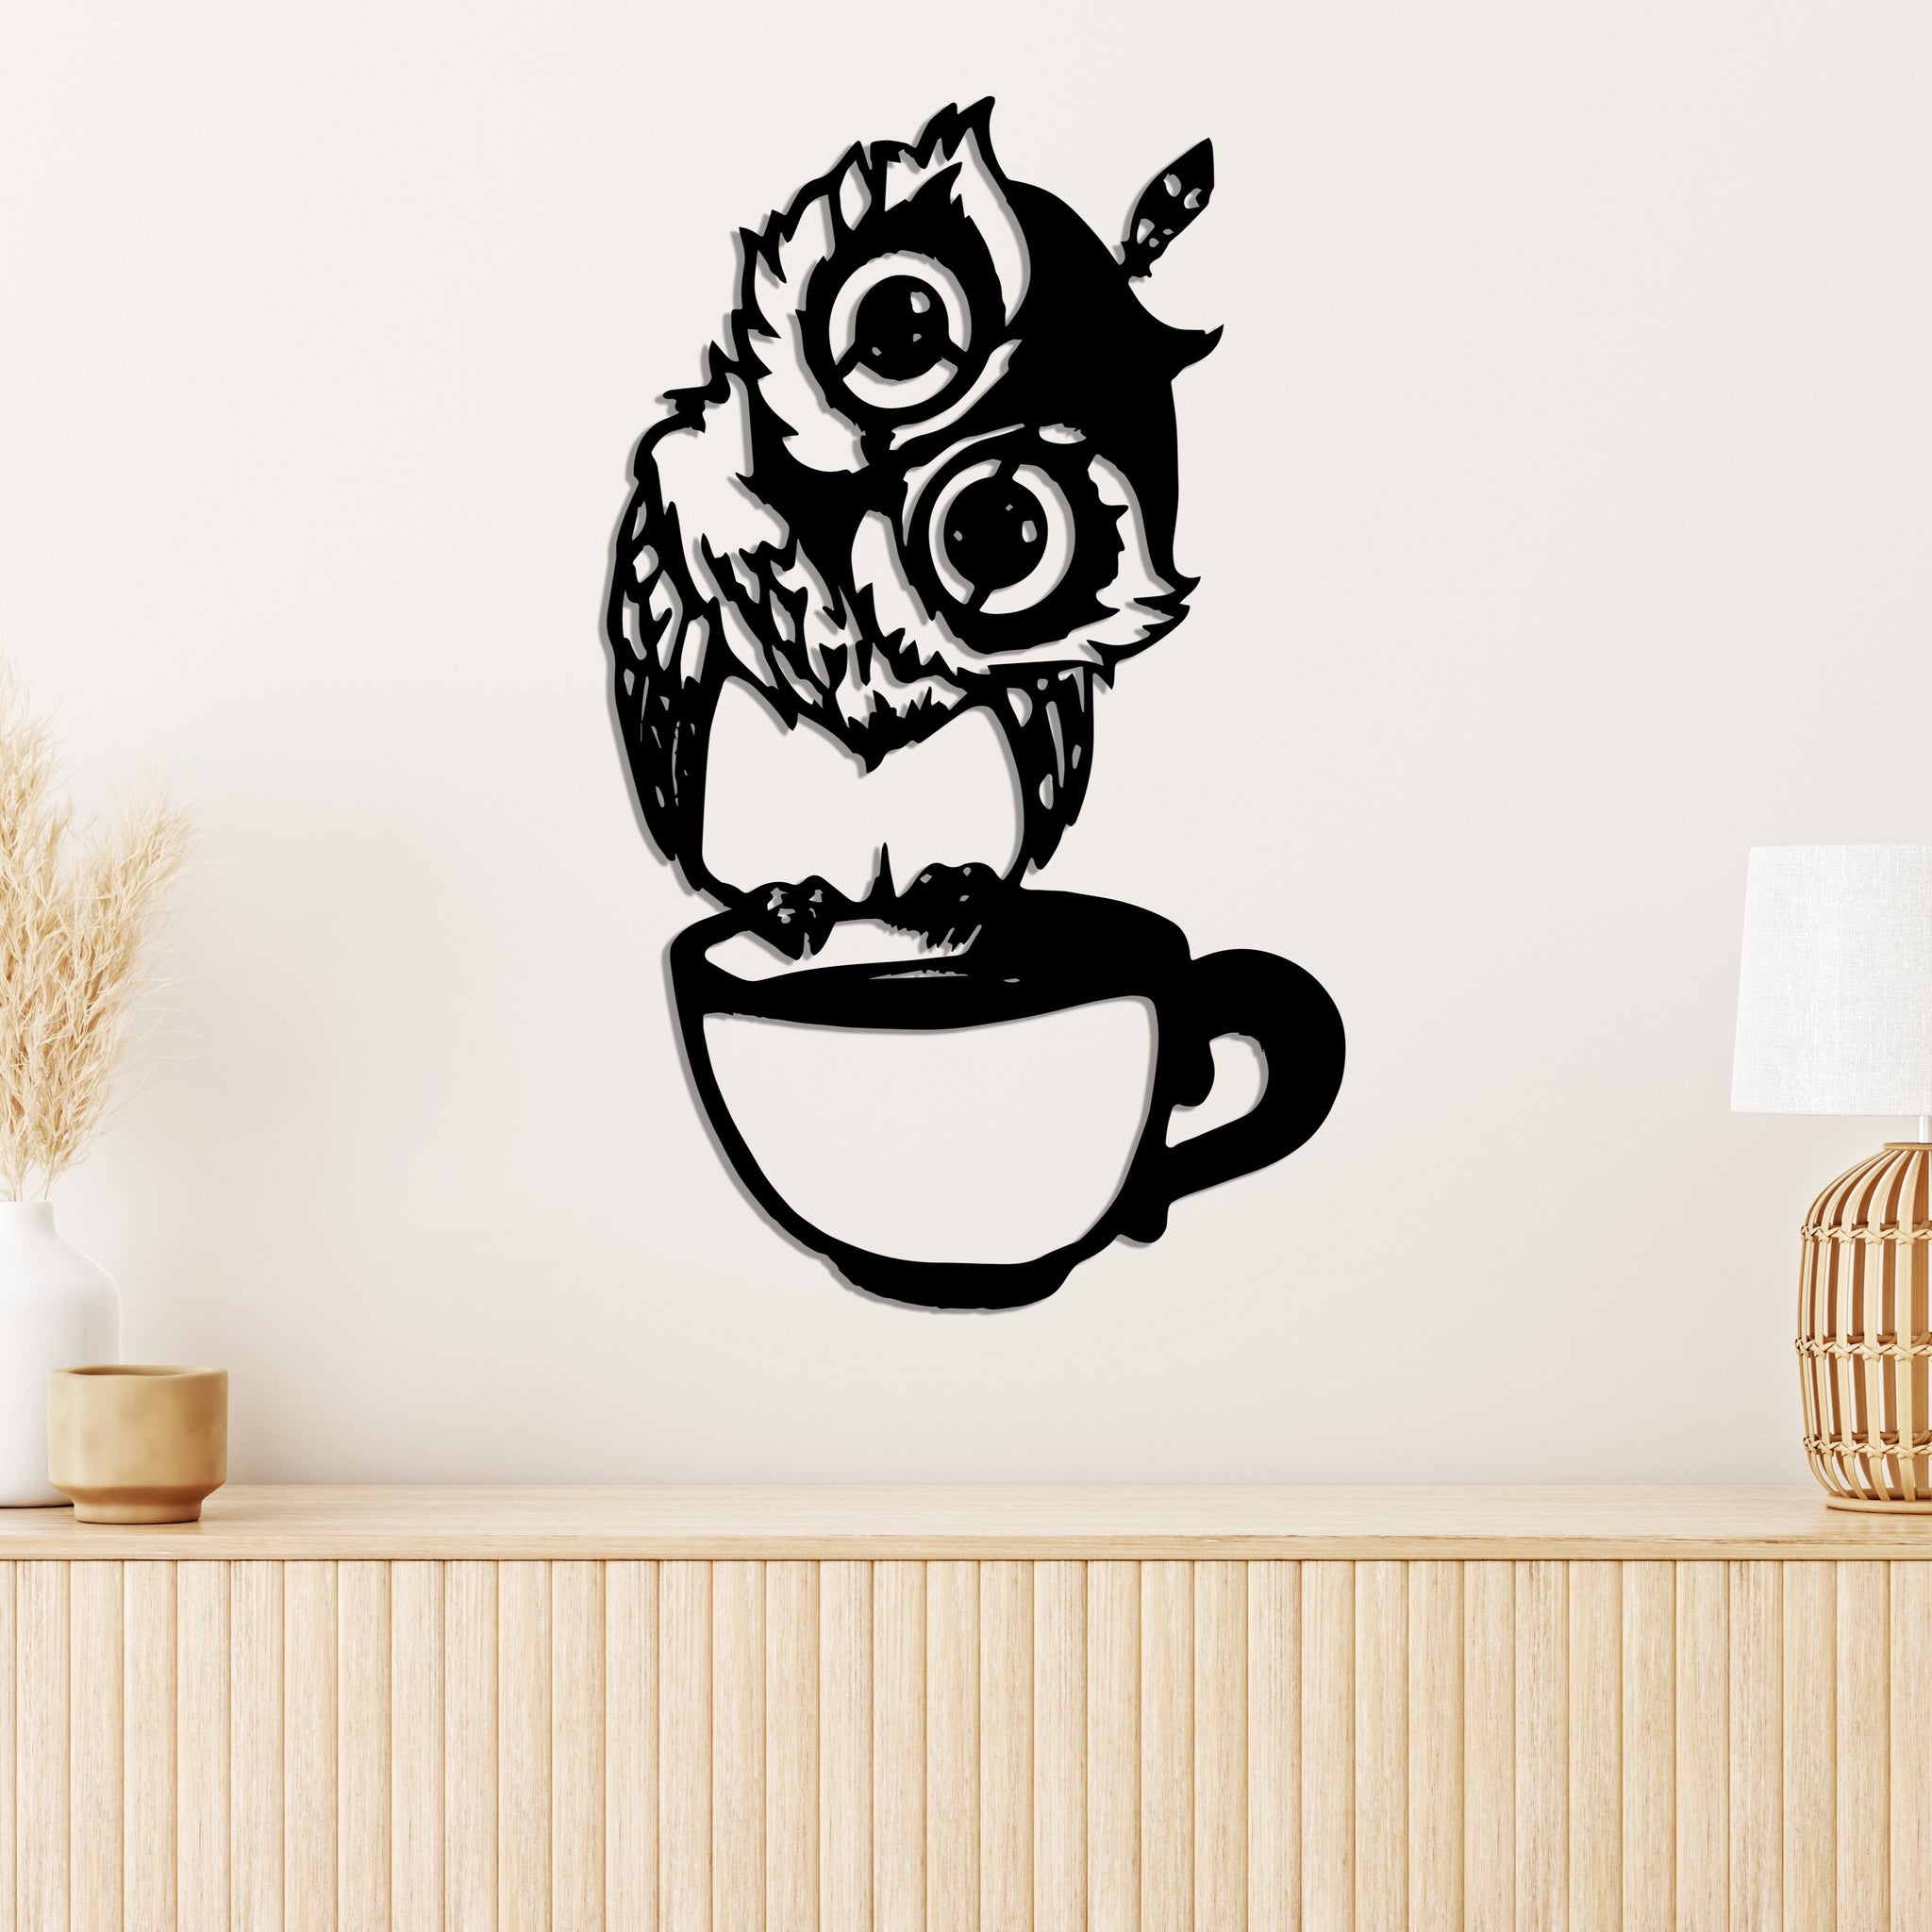 Дерев'яна дизайнерська картина "Coffe Owl" (50 x 30 см)